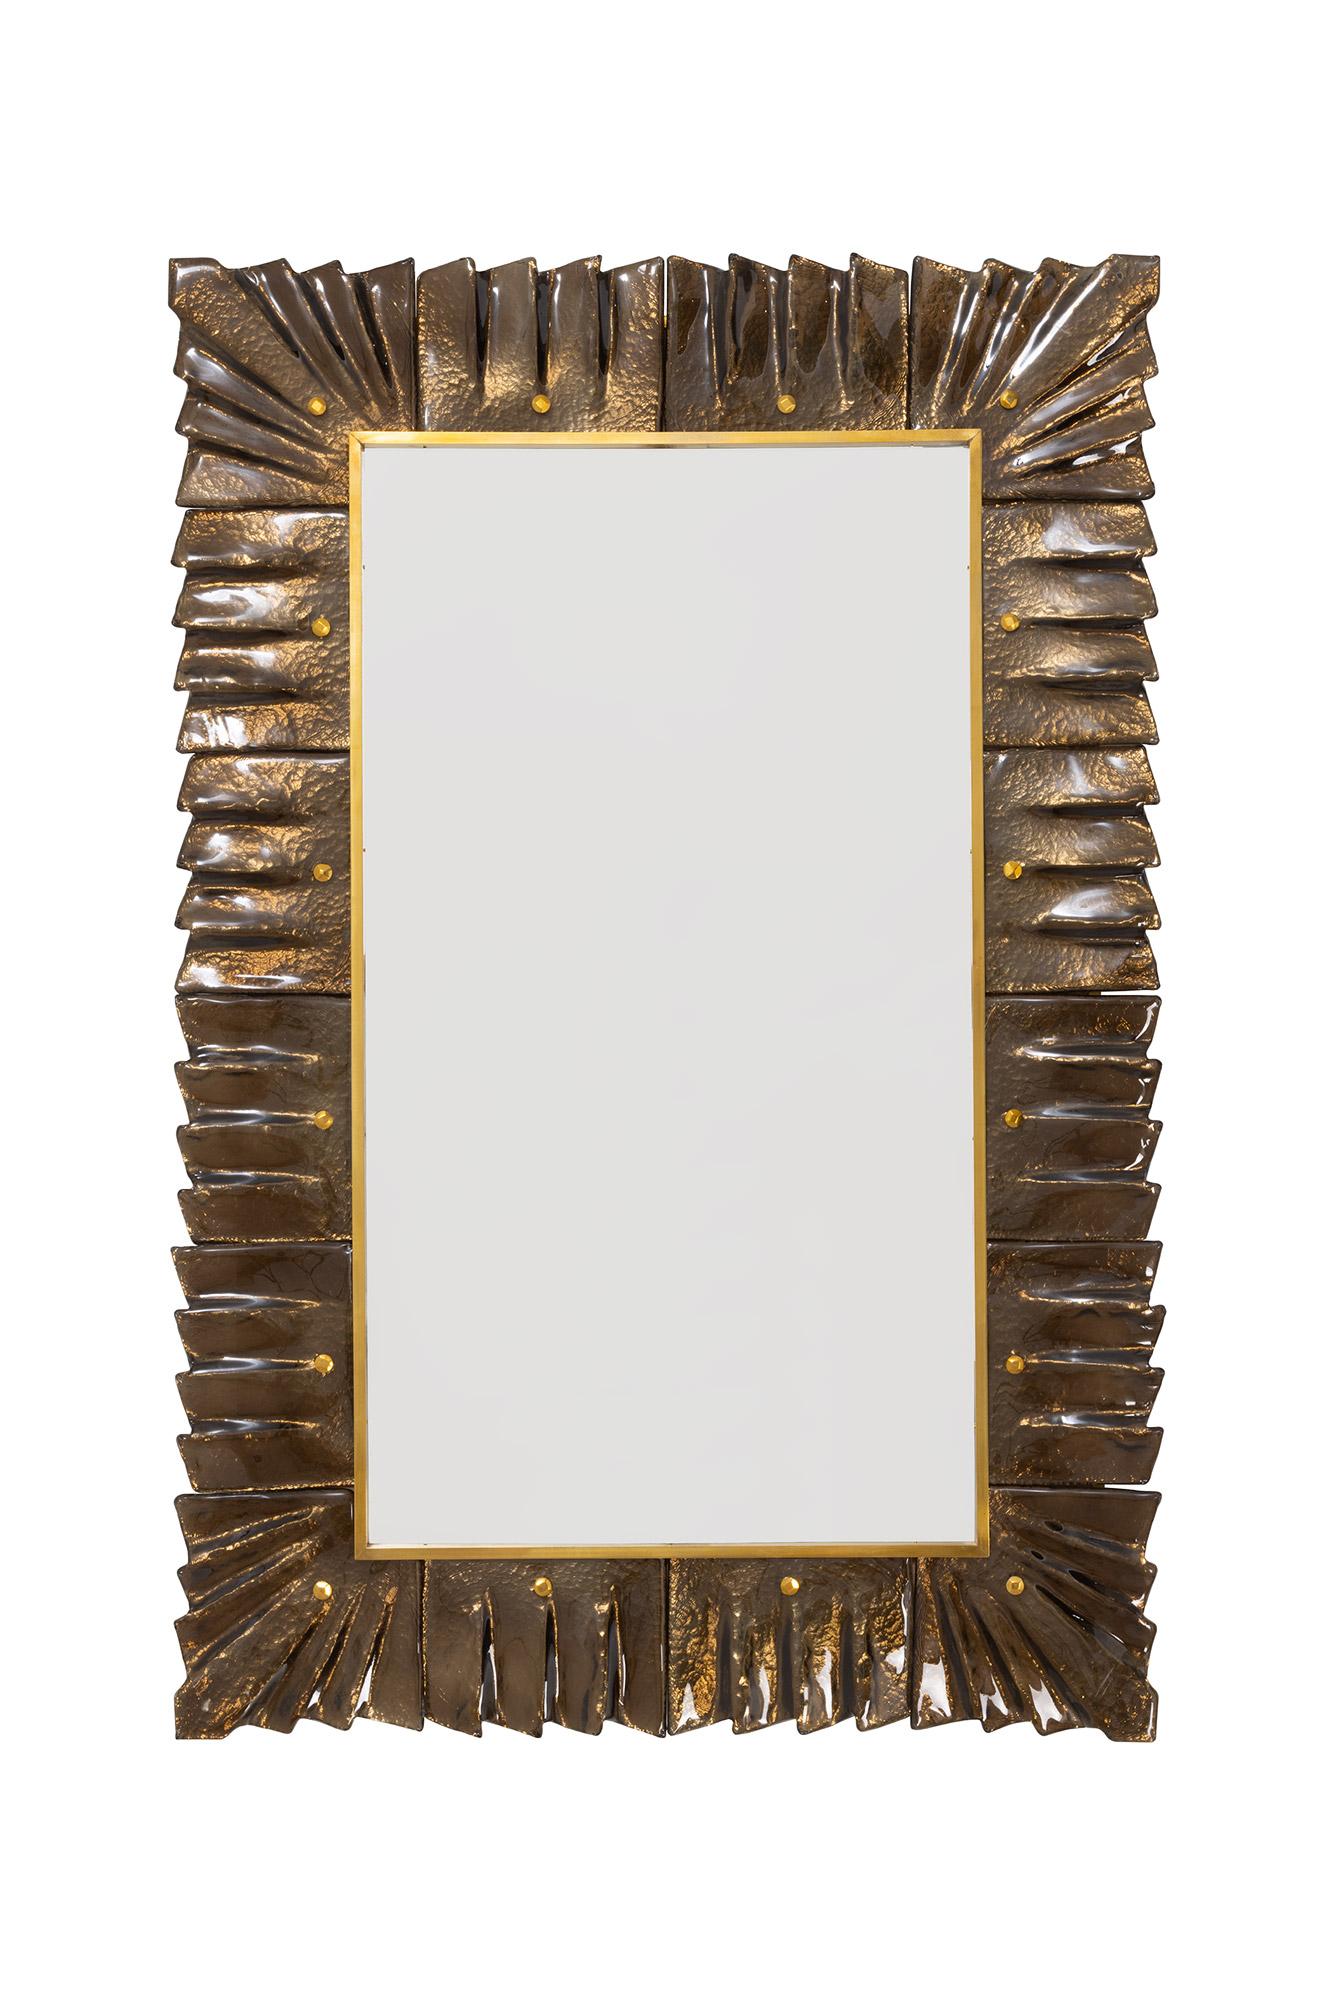 Paire de miroirs encadrés en verre ambre/bronze de Murano, en stock.
Plaque de miroir rectangulaire entourée de carreaux de verre ondulés de couleur ambre/bronze retenus par des cabochons en laiton. 
Fabriqué à la main par une équipe d'artisans à